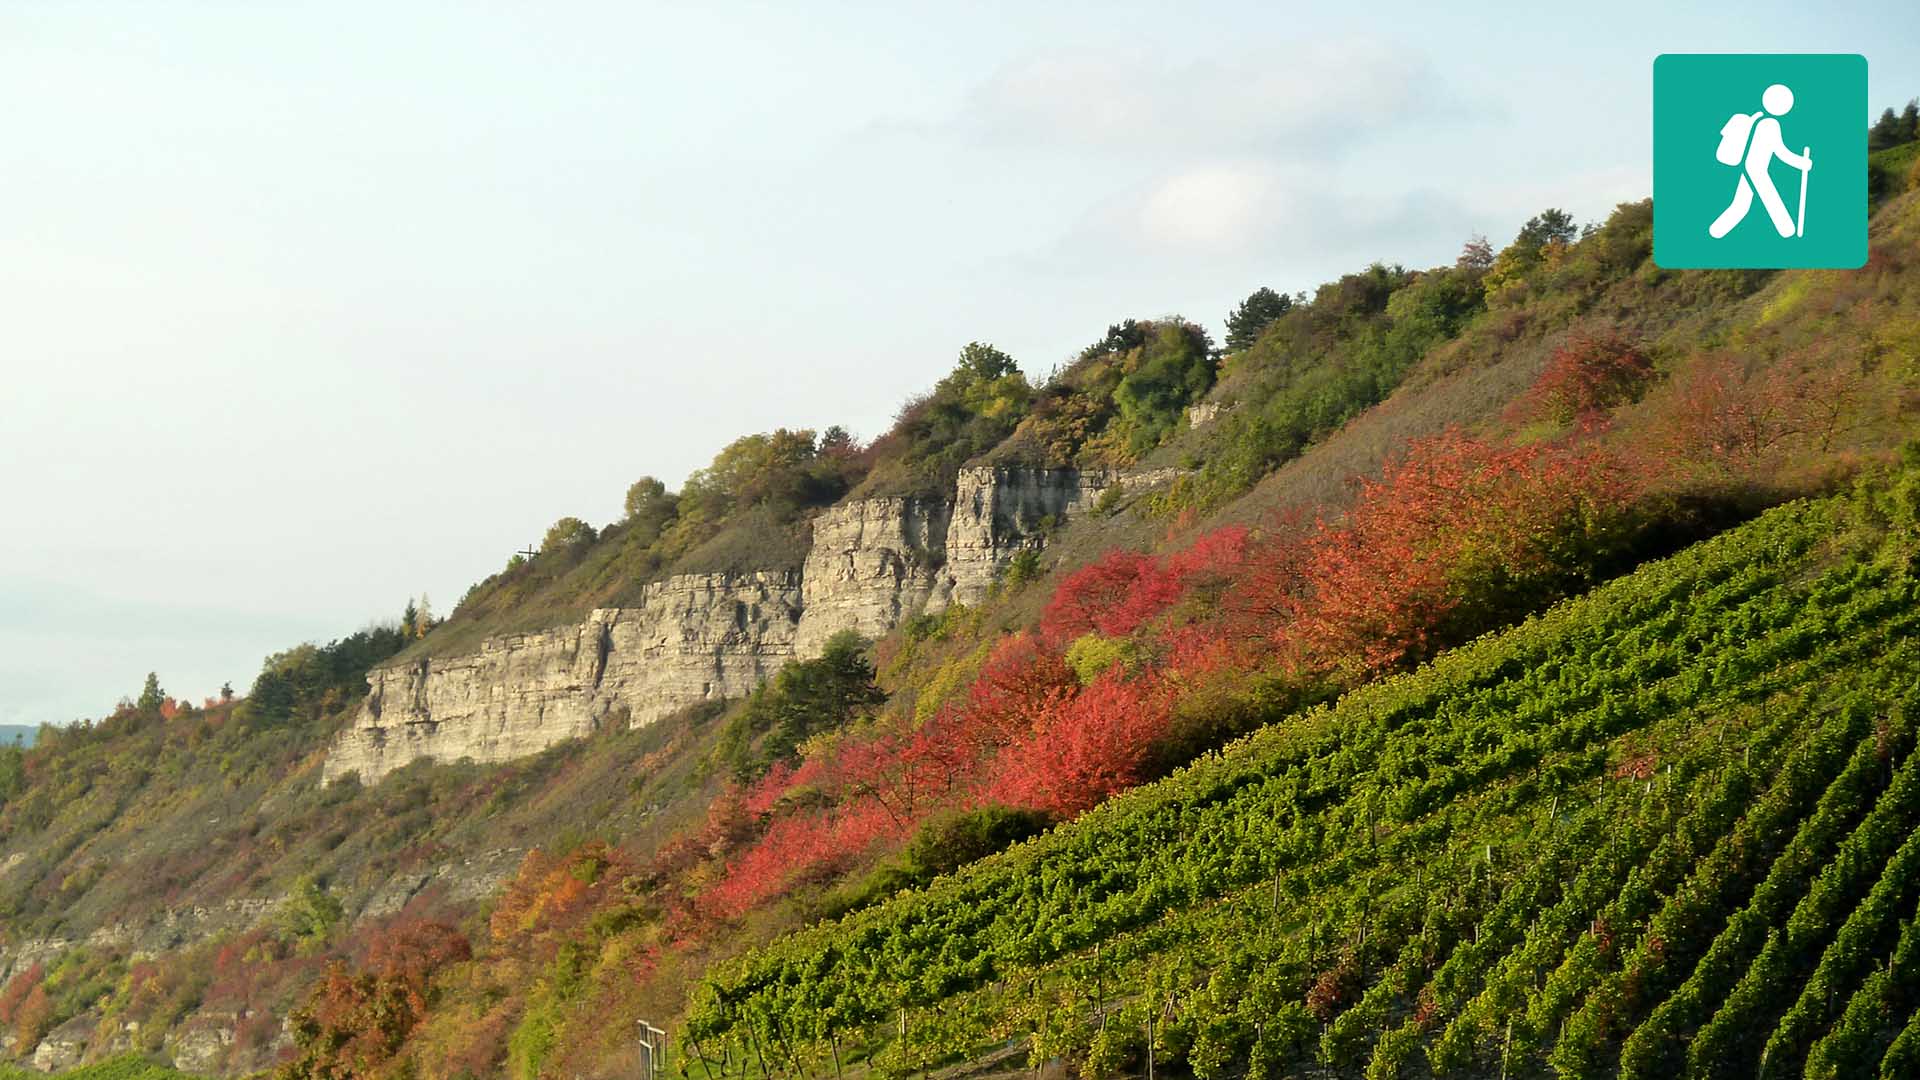 Hinter den Weinreben treten die Felsen eines Hügels zutage.